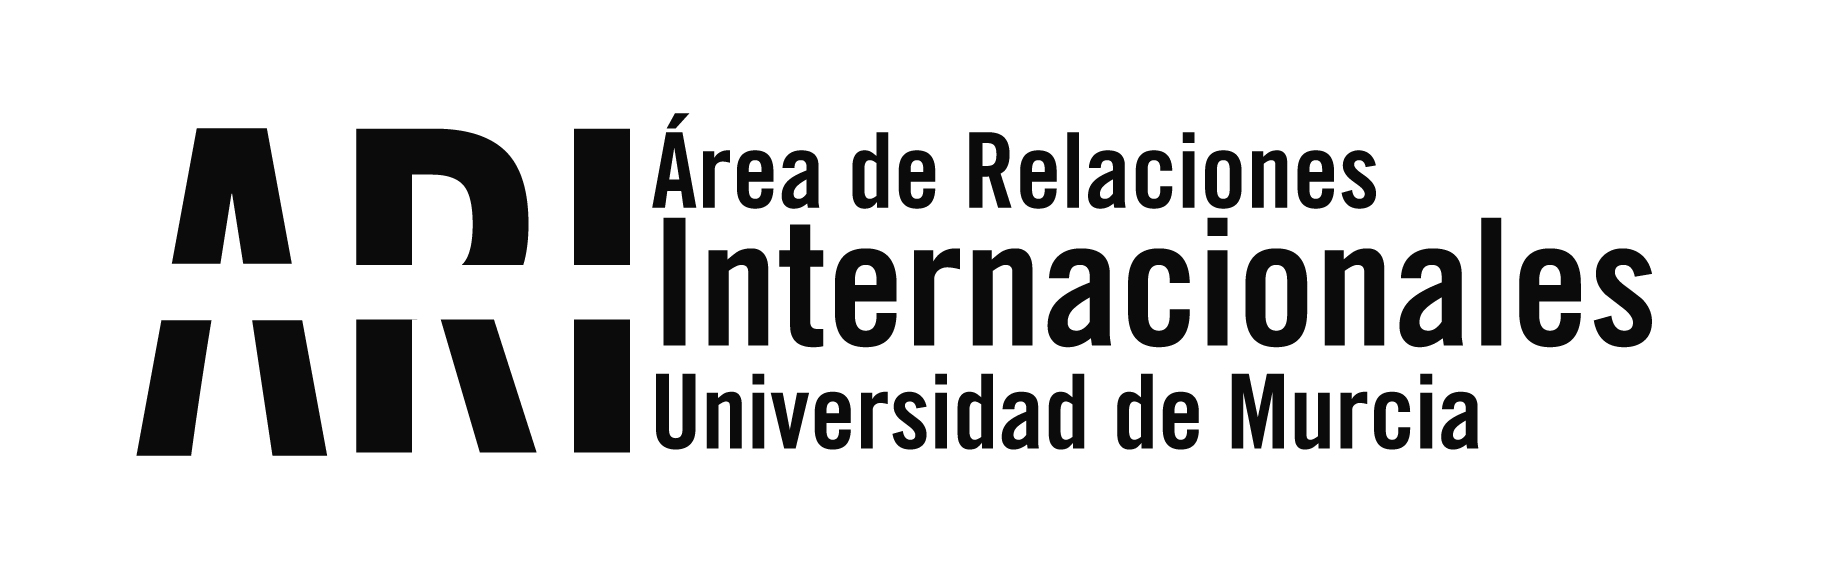 La UMU participa en Córdoba en los encuentros entre universidades españolas y norteamericanas de APUNE y SEPIE - Área de Relaciones Internacionales